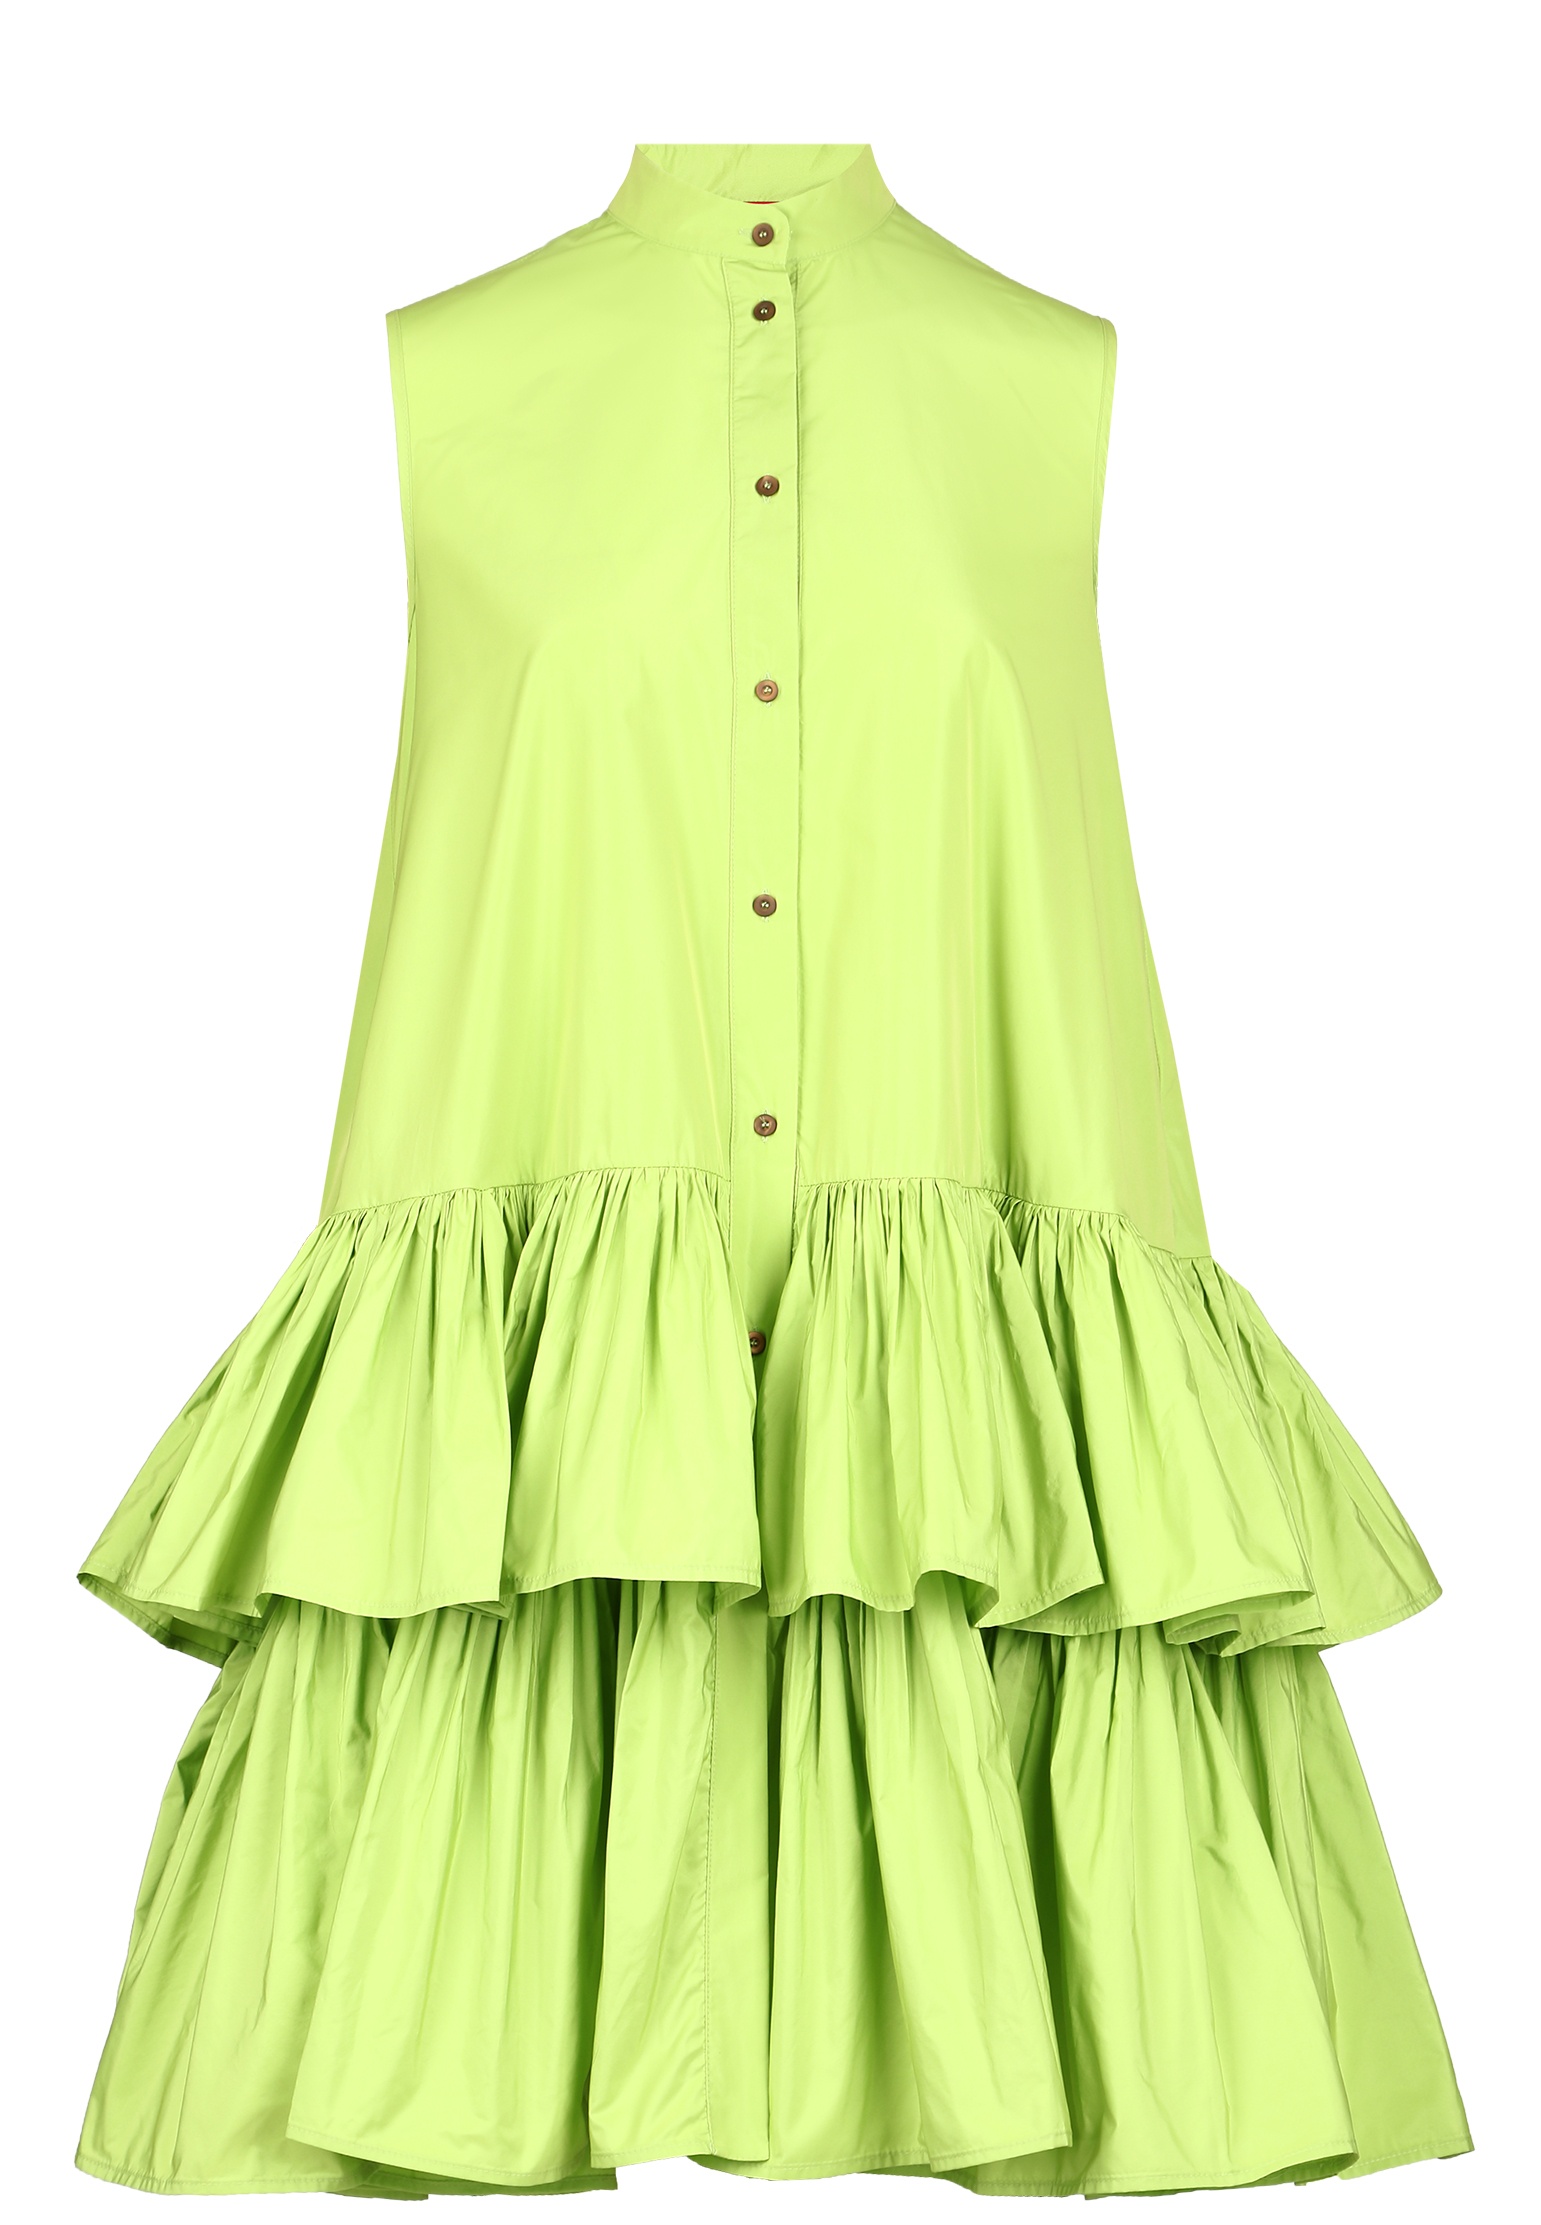 Платье женское Maison Co.go 142909 зеленое 38 IT